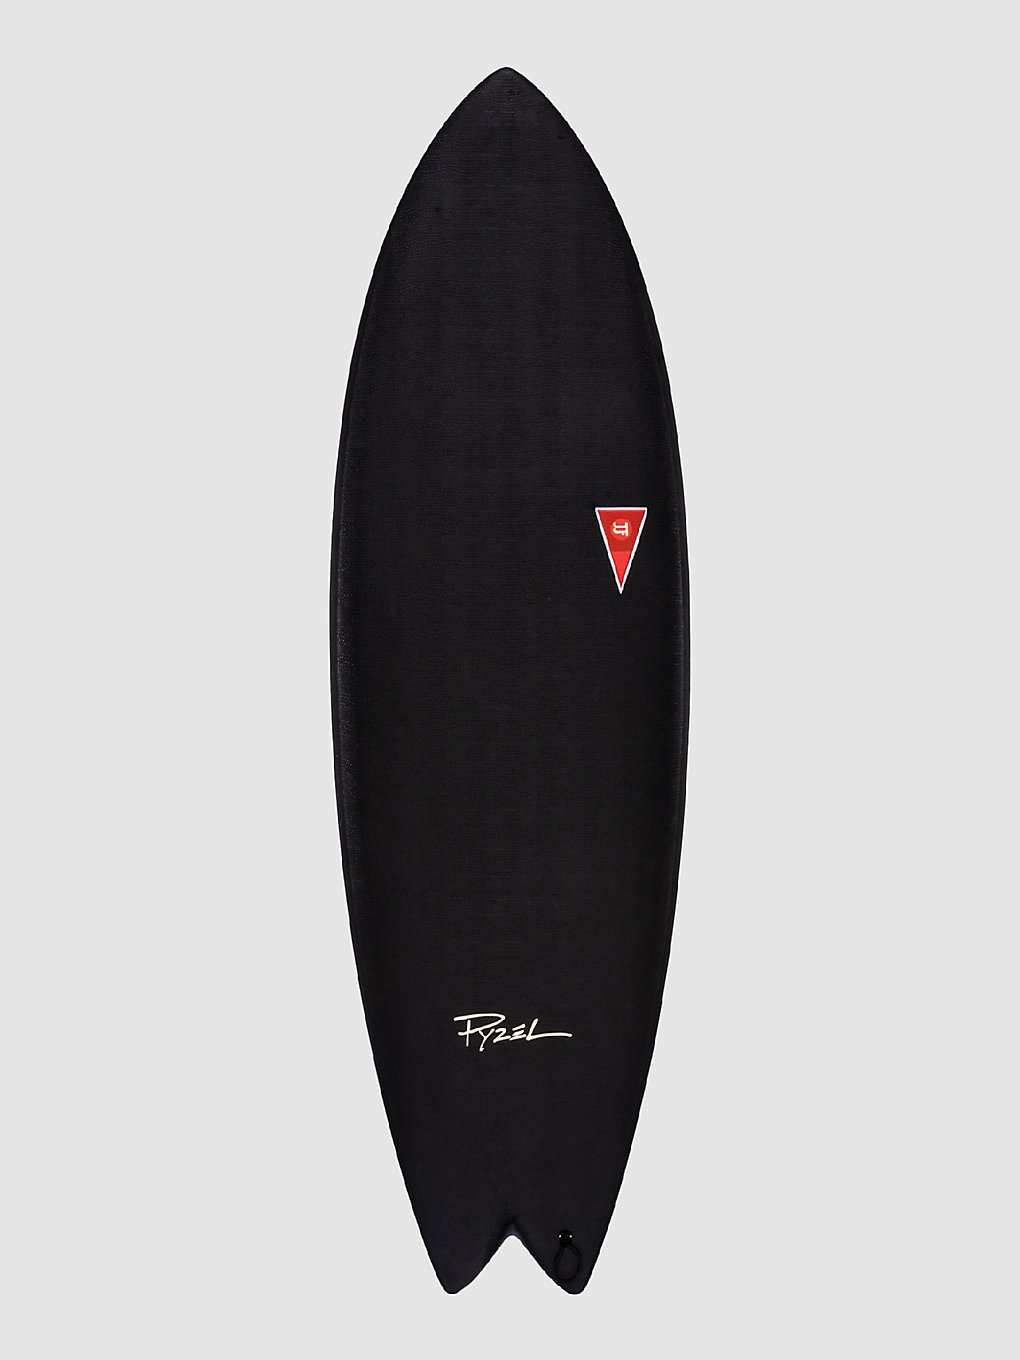 JJF by Pyzel AstroFish 6'0 Planche de surf noir